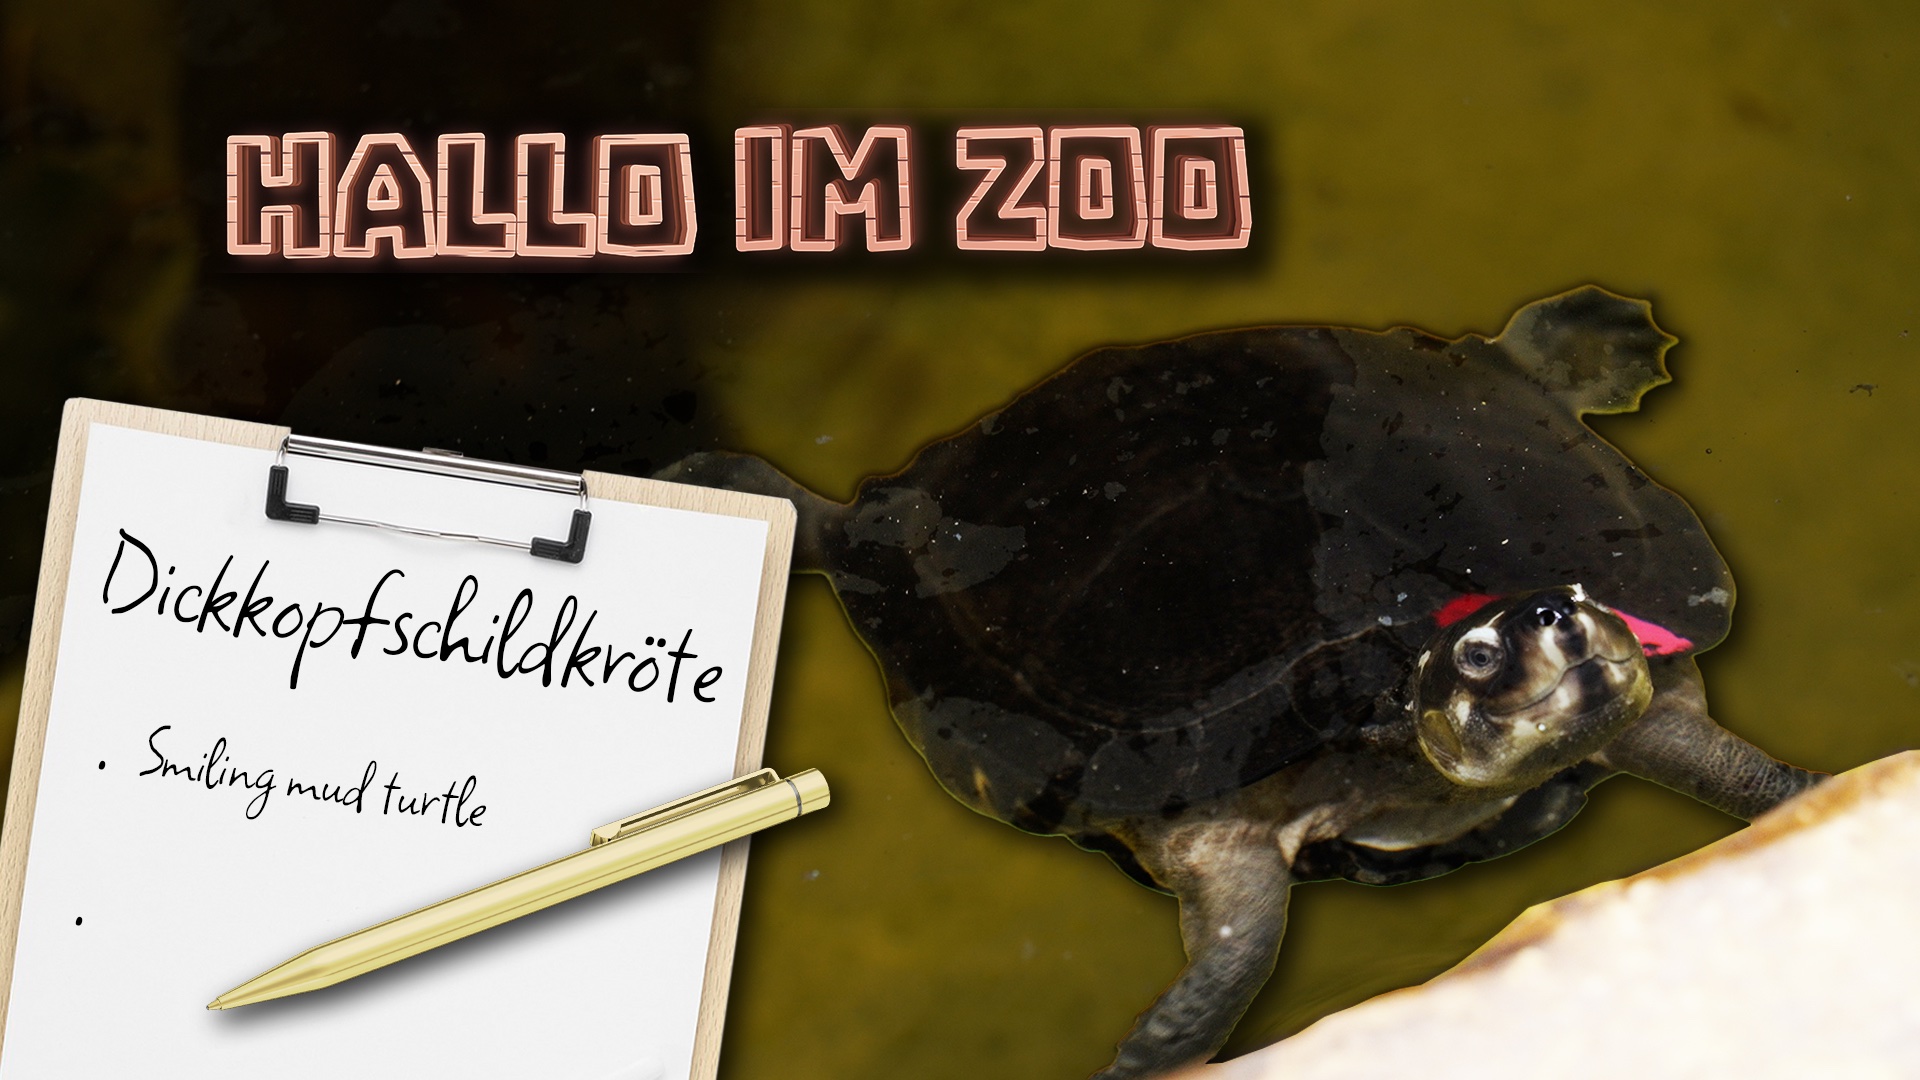 Hallo im Zoo: Dickkopschildkröten